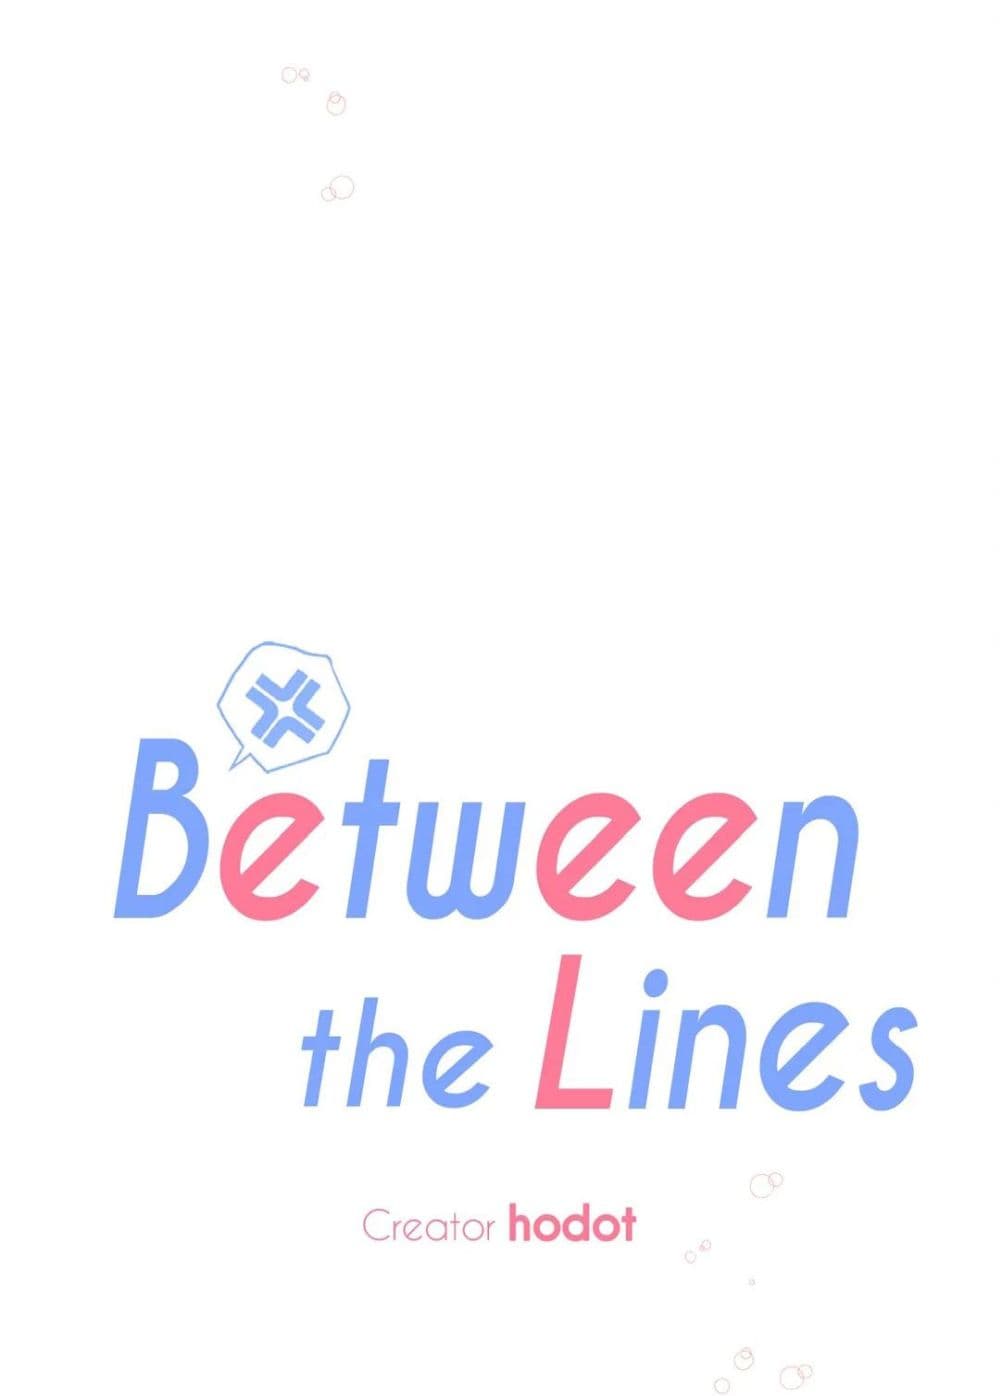 Between the Lines 7 22